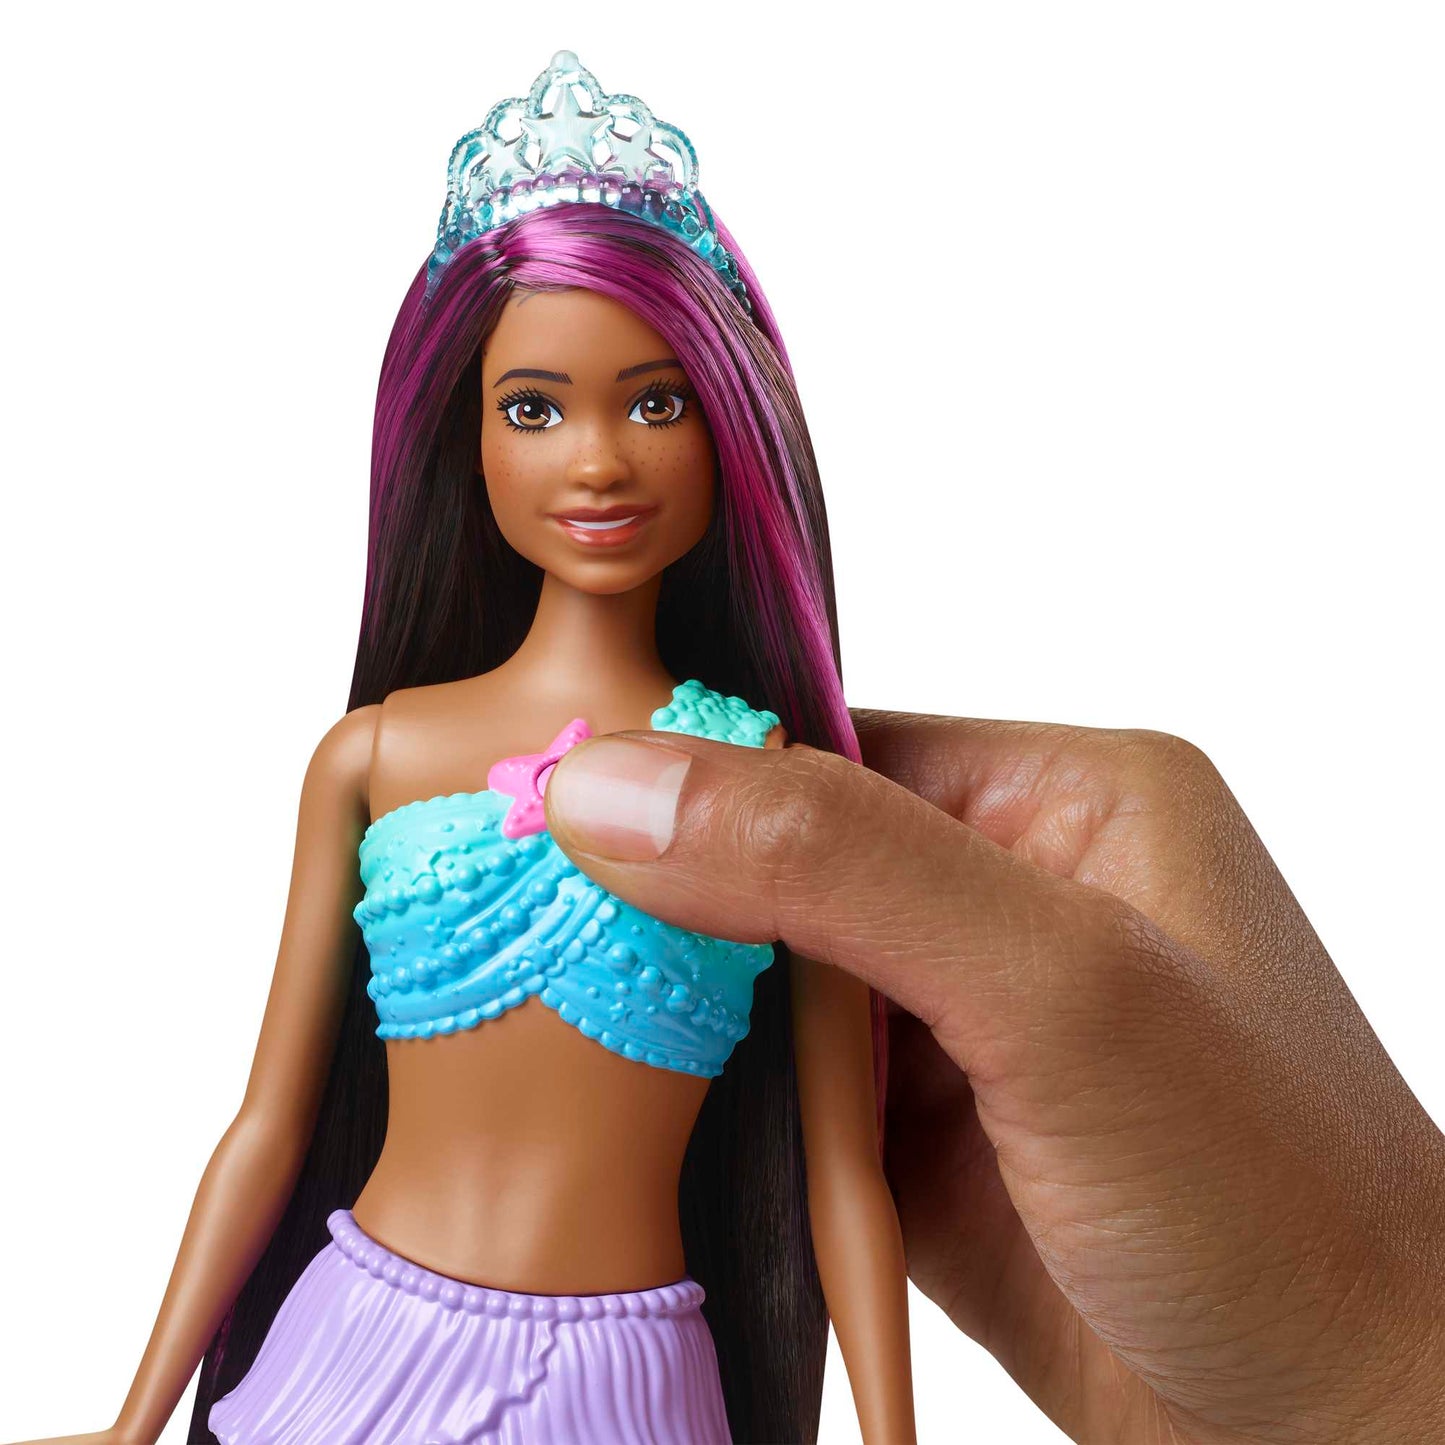 Barbie Dreamtopia Twinkle Lights Mermaid Doll - Assorted*